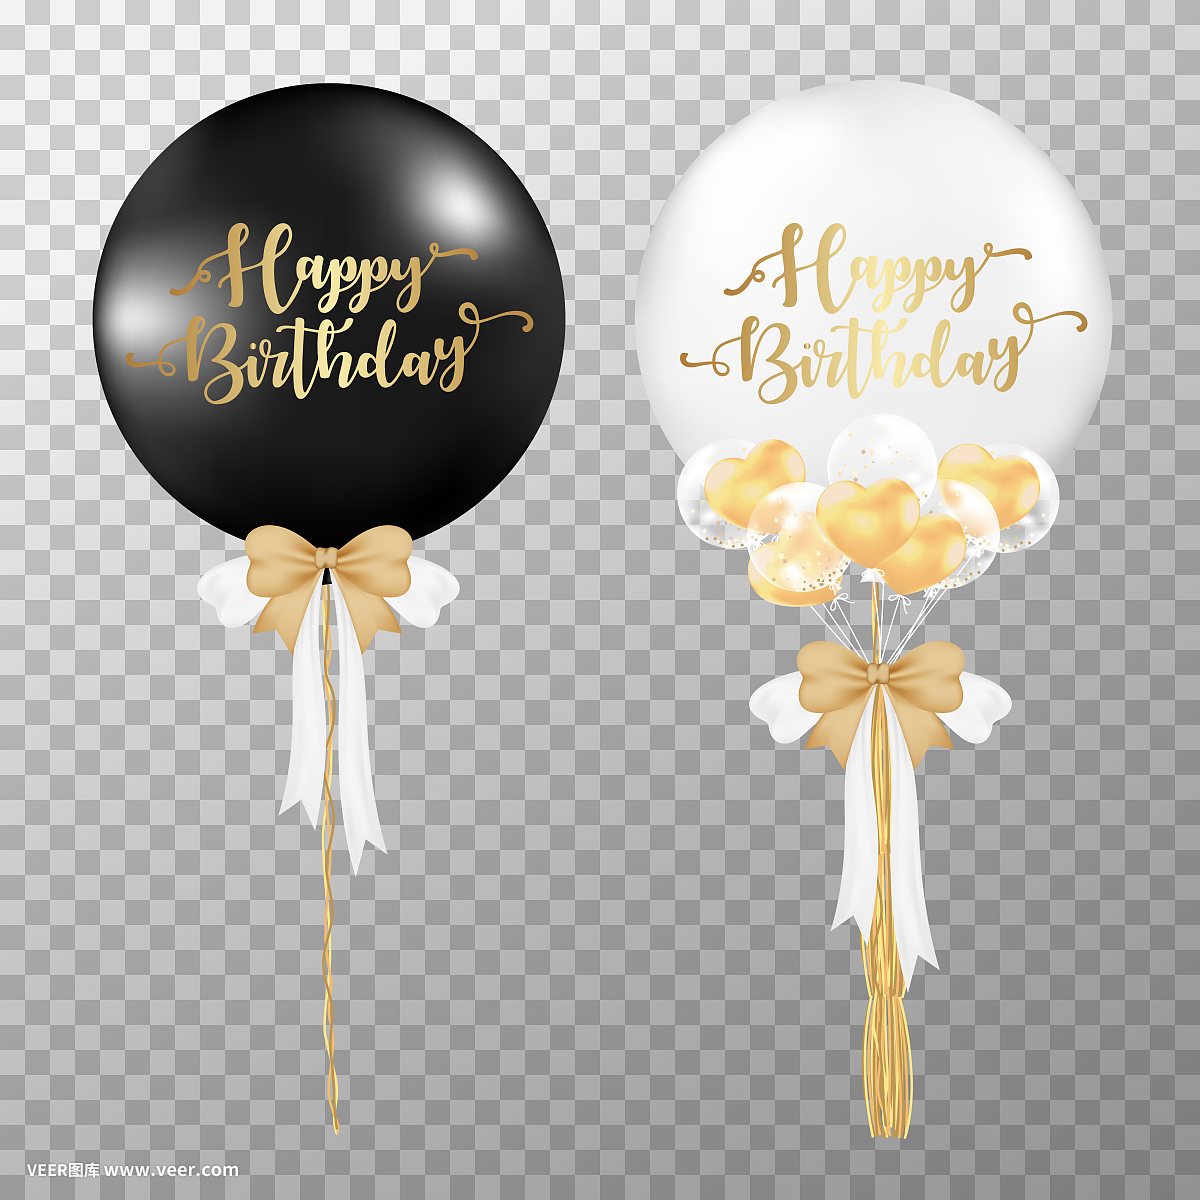 透明背景上的生日气球。现实的黑色和白色光泽气球矢量插图。为装饰生日派对设计模板。